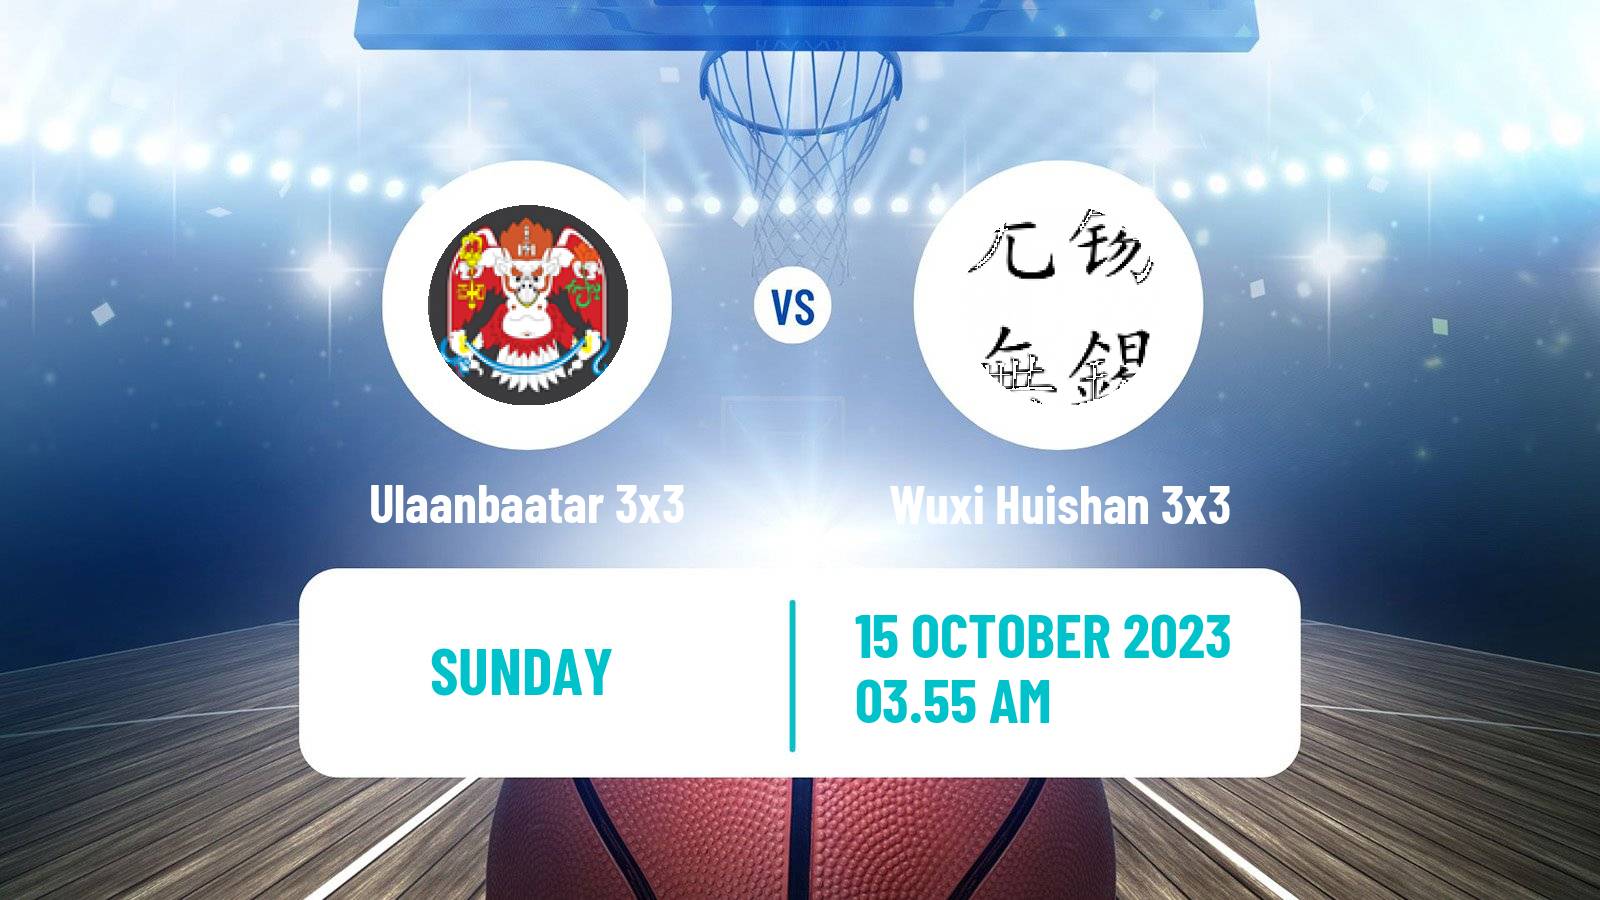 Basketball World Tour Shanghai 3x3 Ulaanbaatar 3x3 - Wuxi Huishan 3x3